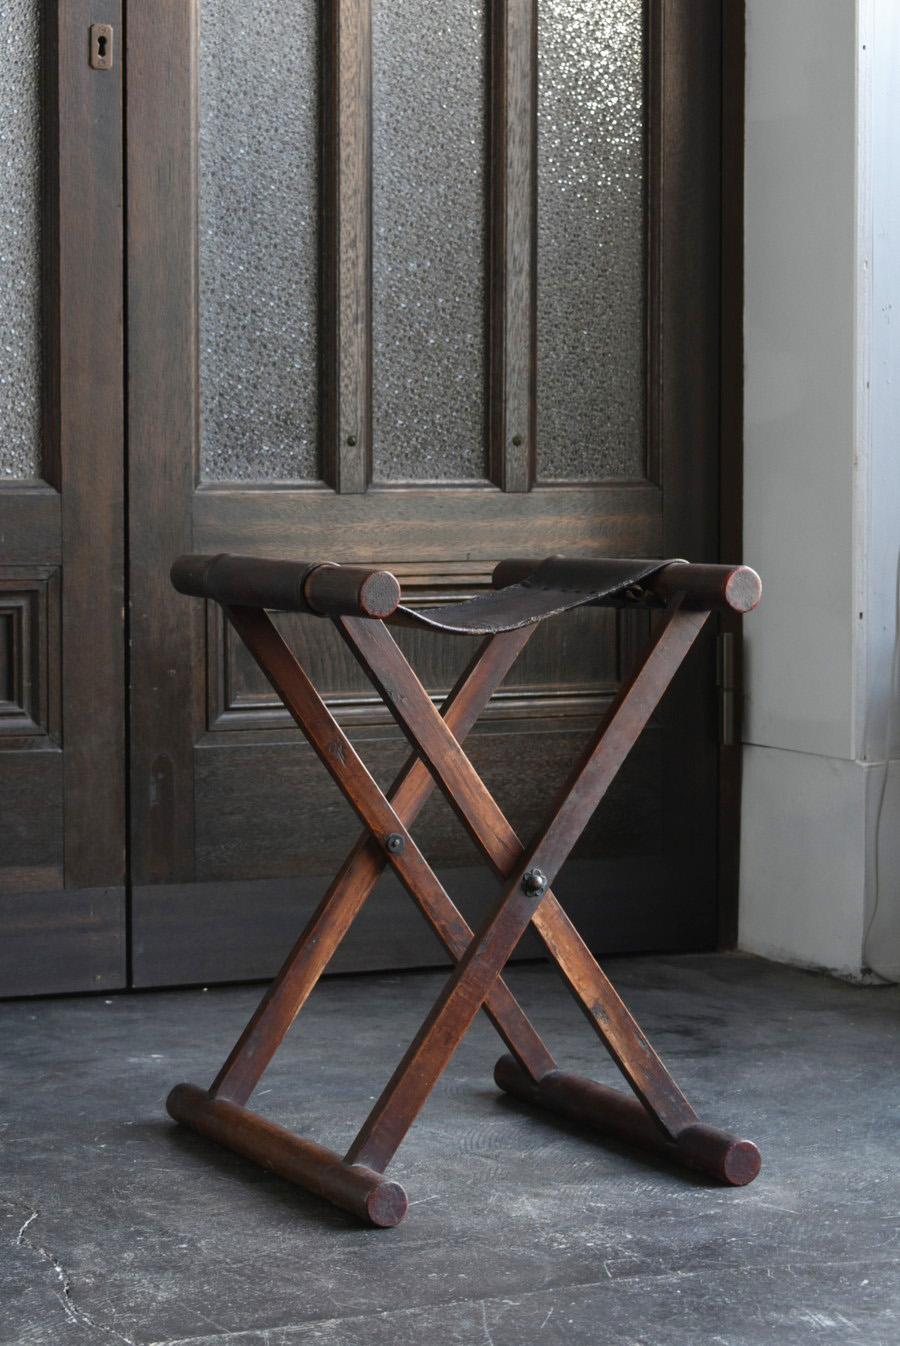 Je voudrais vous présenter une vieille chaise japonaise. Il s'agit d'une petite chaise pliante appelée 